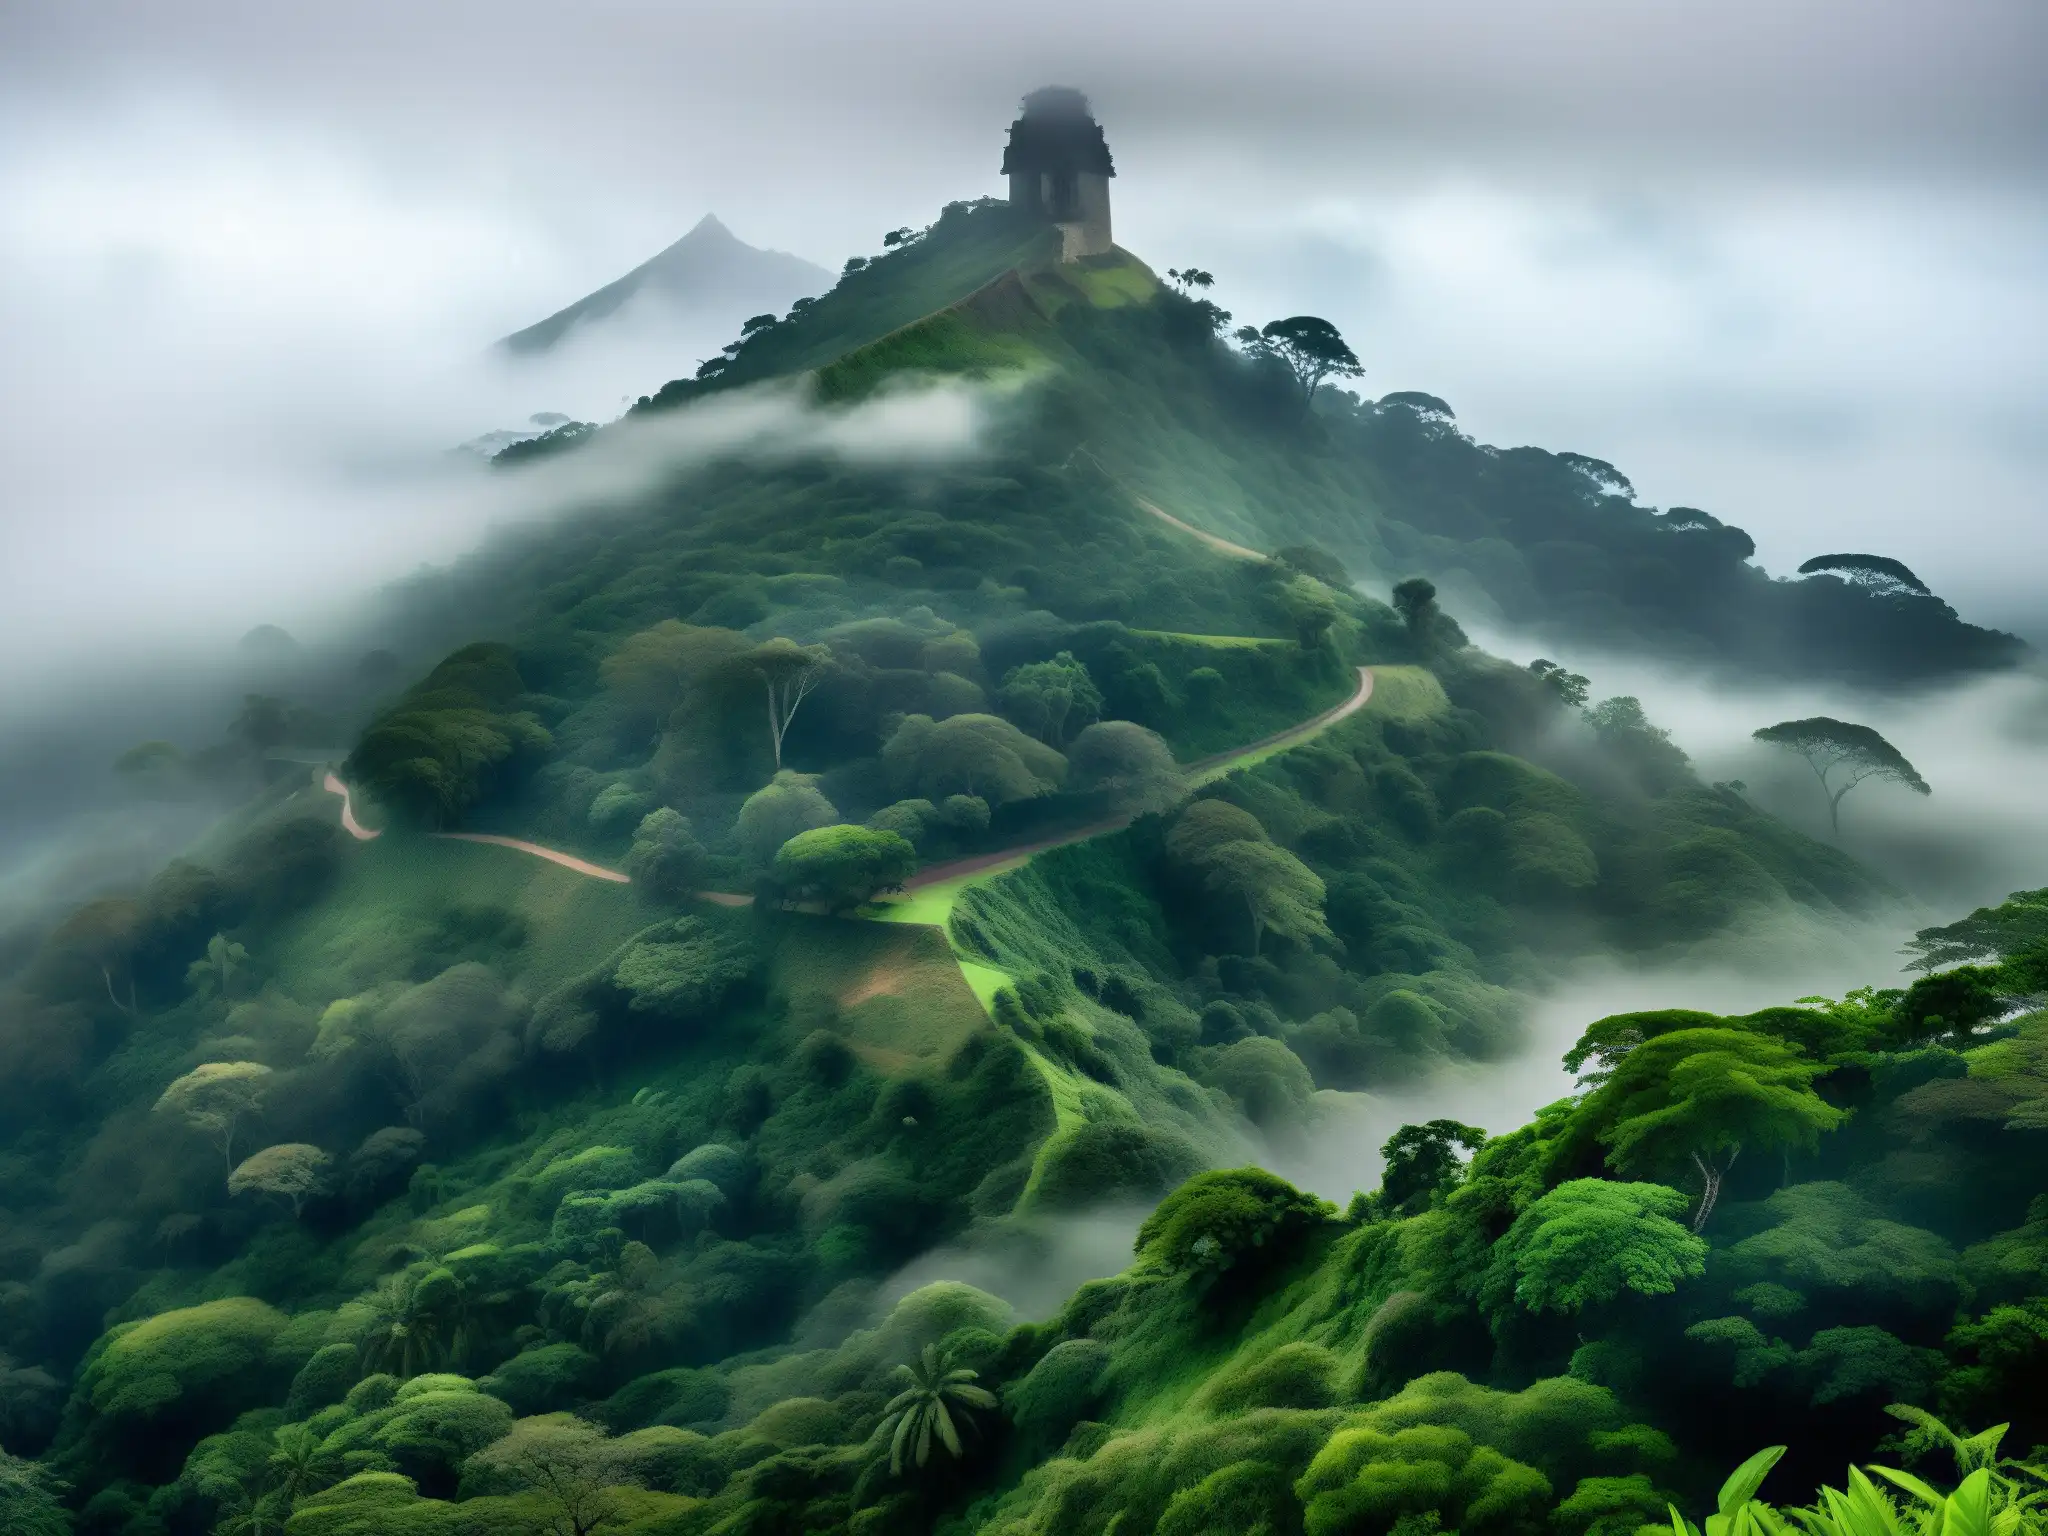 Vista envolvente del misterioso Cerro de San Juan Tepic, con ruinas antiguas entre la neblina y exuberante vegetación